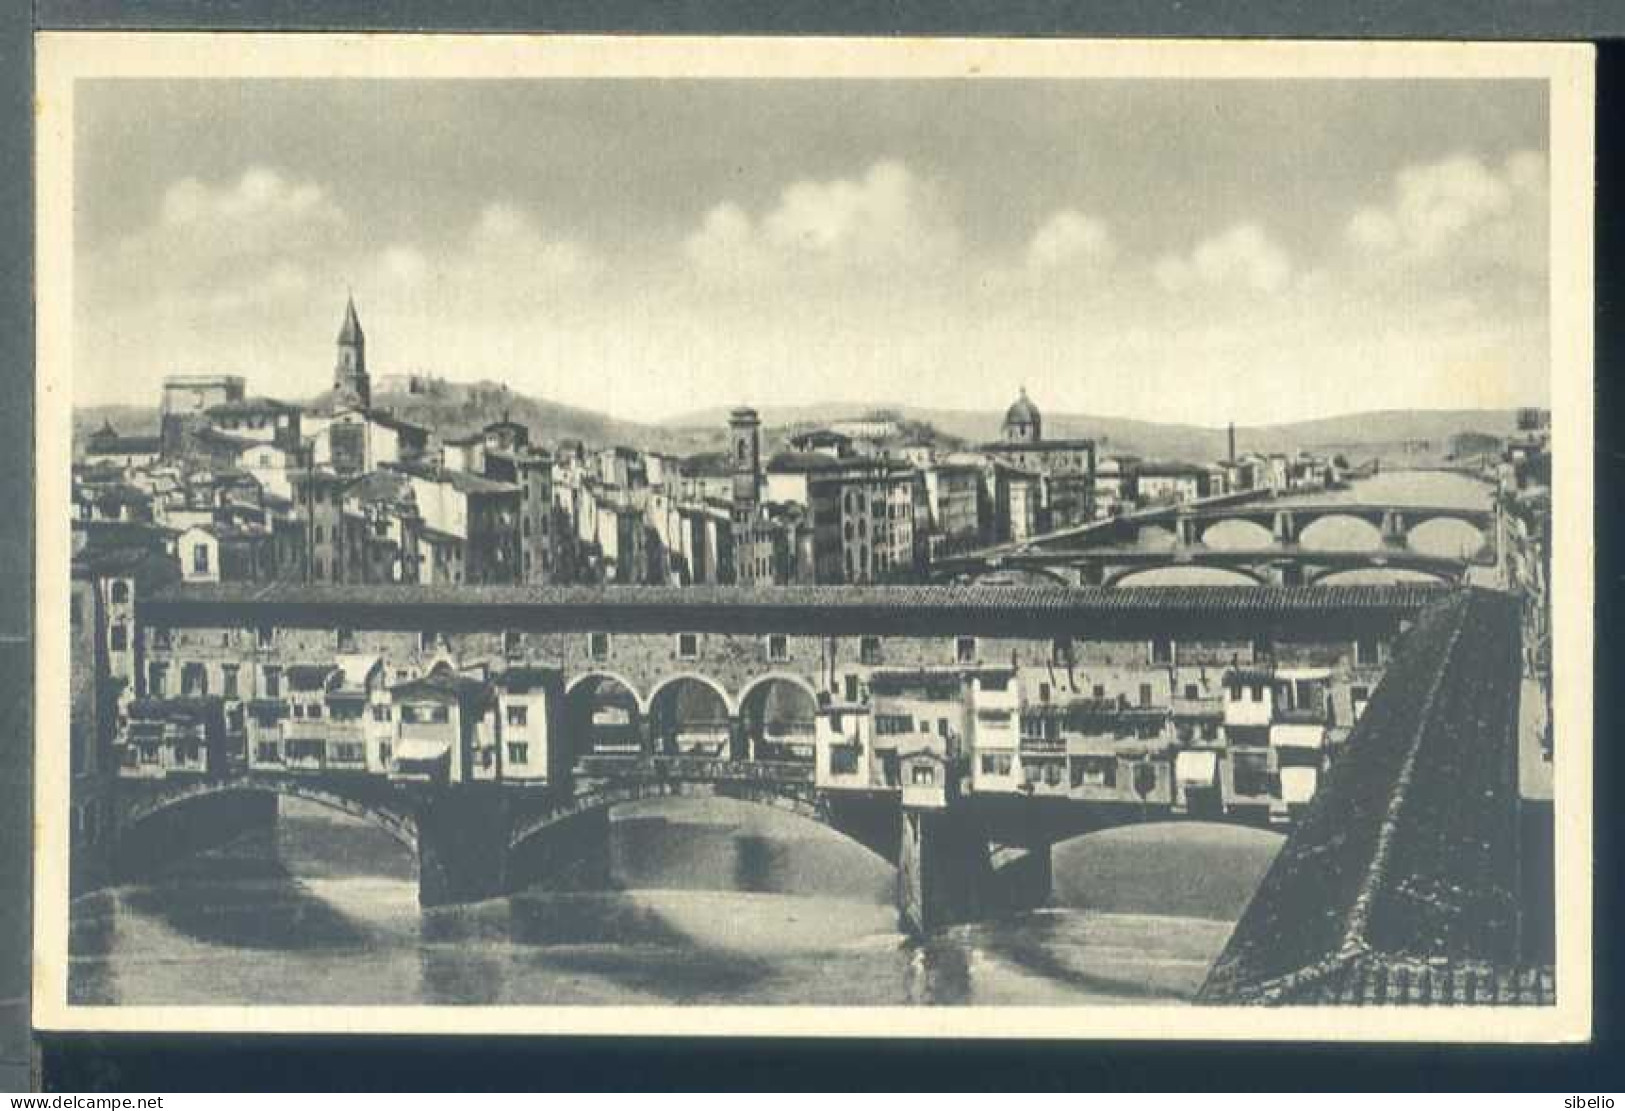 Firenze - dieci cartoline antiche - rif. 2